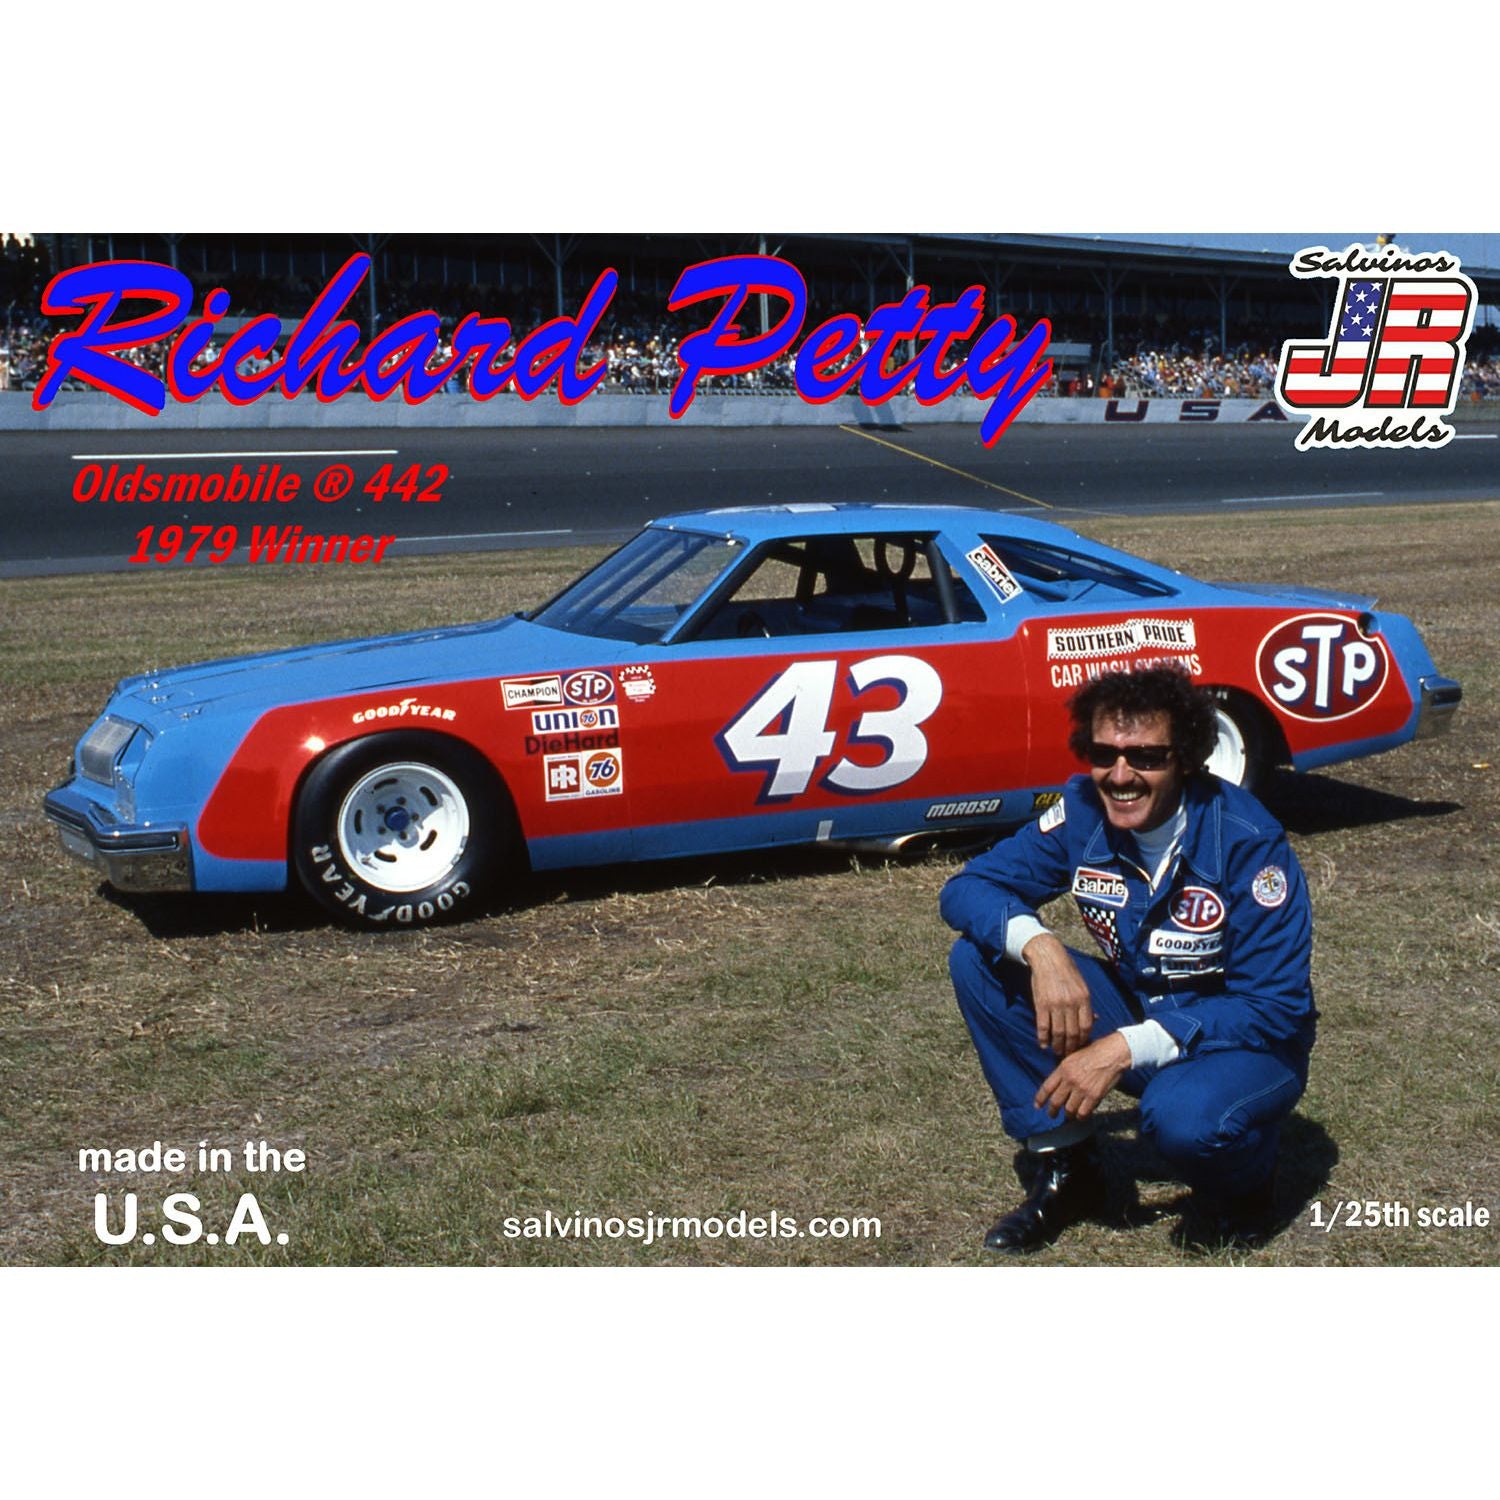 Salvinos JR Models(サルビノス J・R モデル) NASCAR 1979 デイトナ500ウイナー オールズモビル442 #43  リチャード・ペティ 1/25スケール 未塗装組立キット